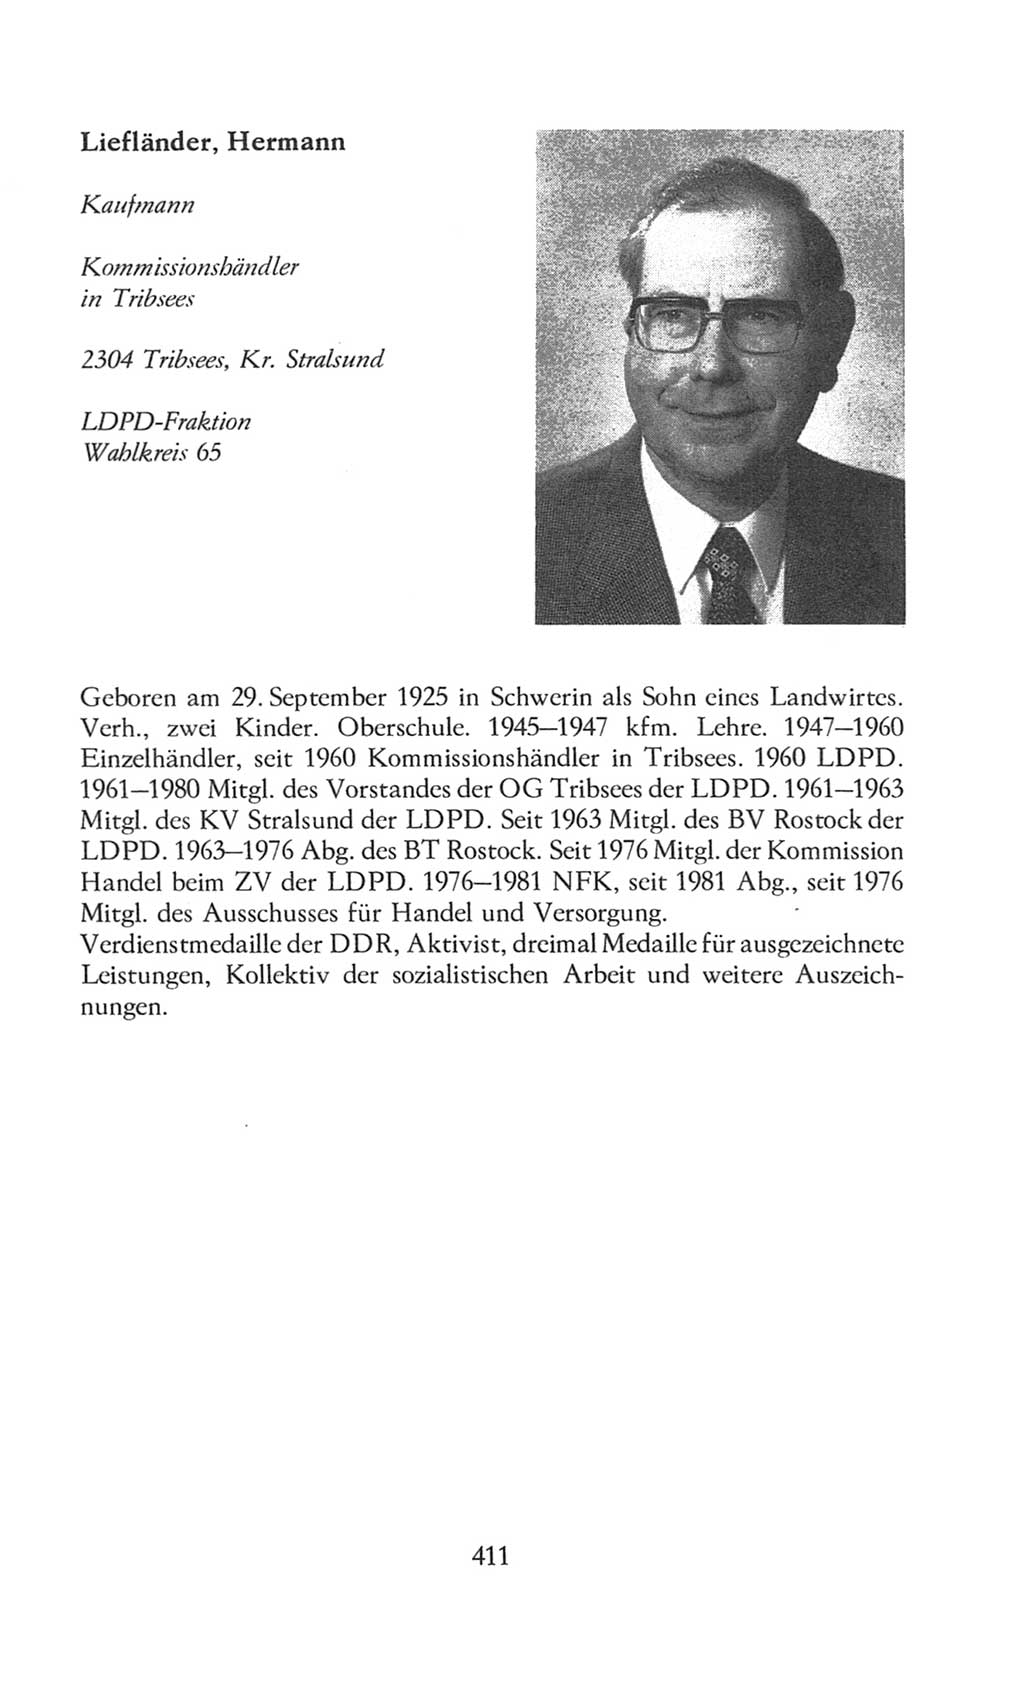 Volkskammer (VK) der Deutschen Demokratischen Republik (DDR), 8. Wahlperiode 1981-1986, Seite 411 (VK. DDR 8. WP. 1981-1986, S. 411)